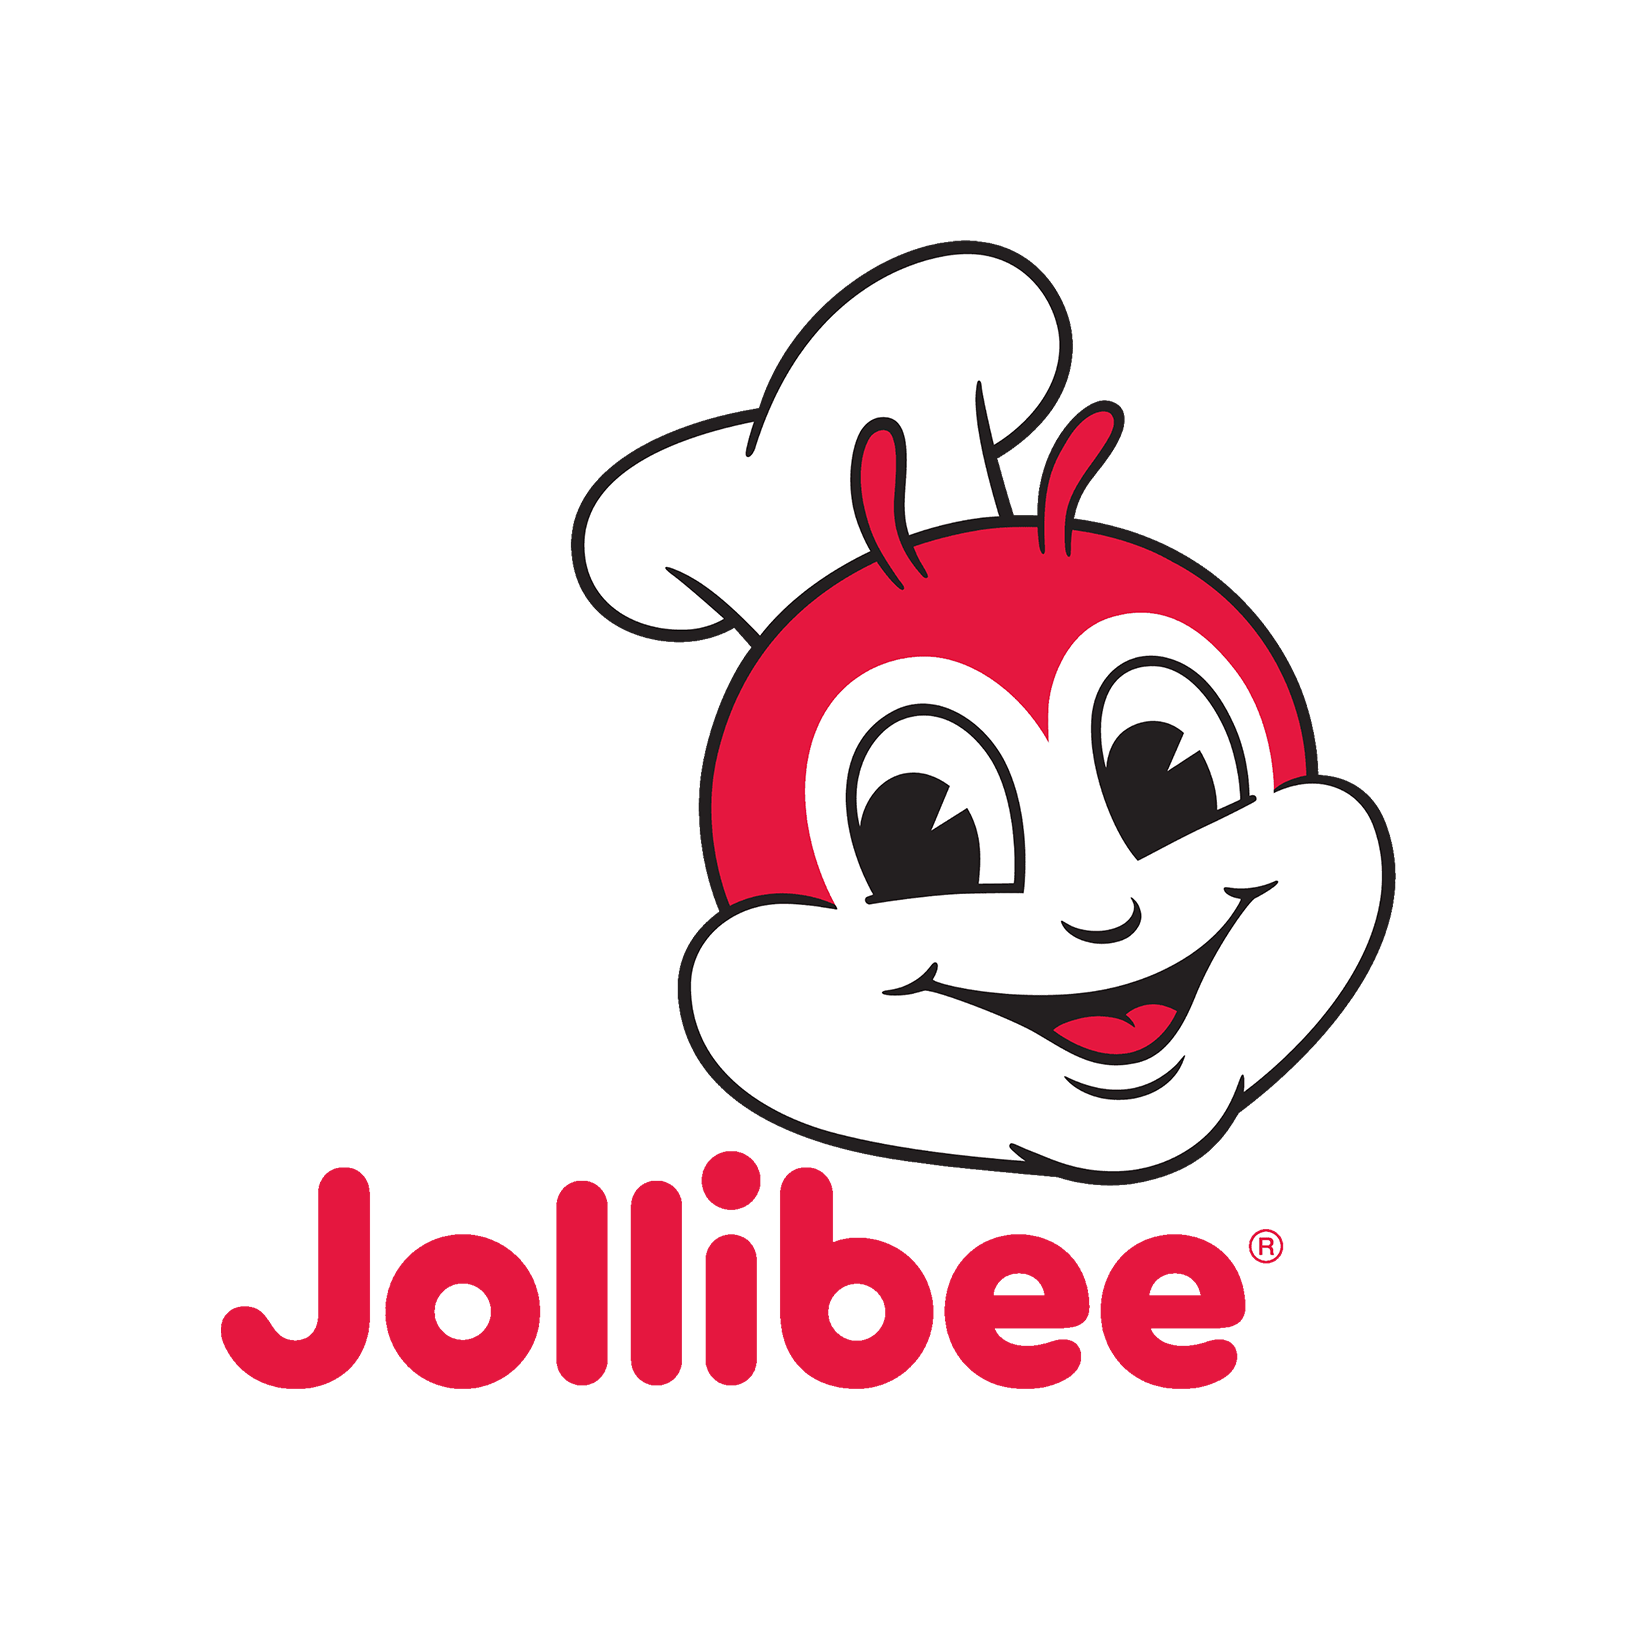 Jollibee.png